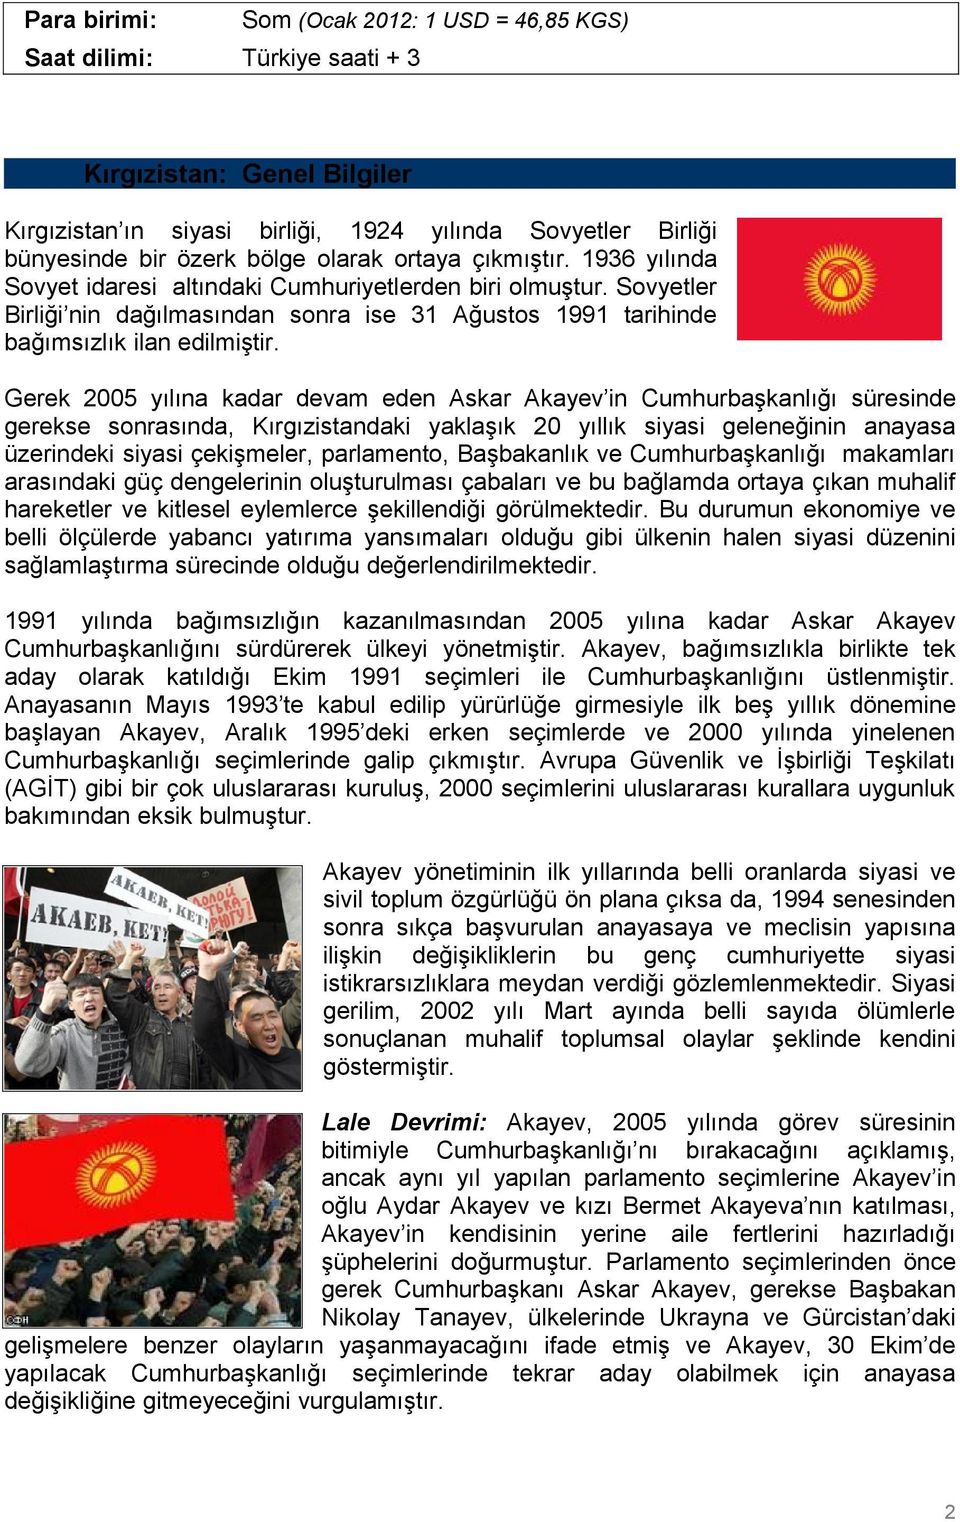 Gerek 2005 yılına kadar devam eden Askar Akayev in Cumhurbaşkanlığı süresinde gerekse sonrasında, Kırgızistandaki yaklaşık 20 yıllık siyasi geleneğinin anayasa üzerindeki siyasi çekişmeler,